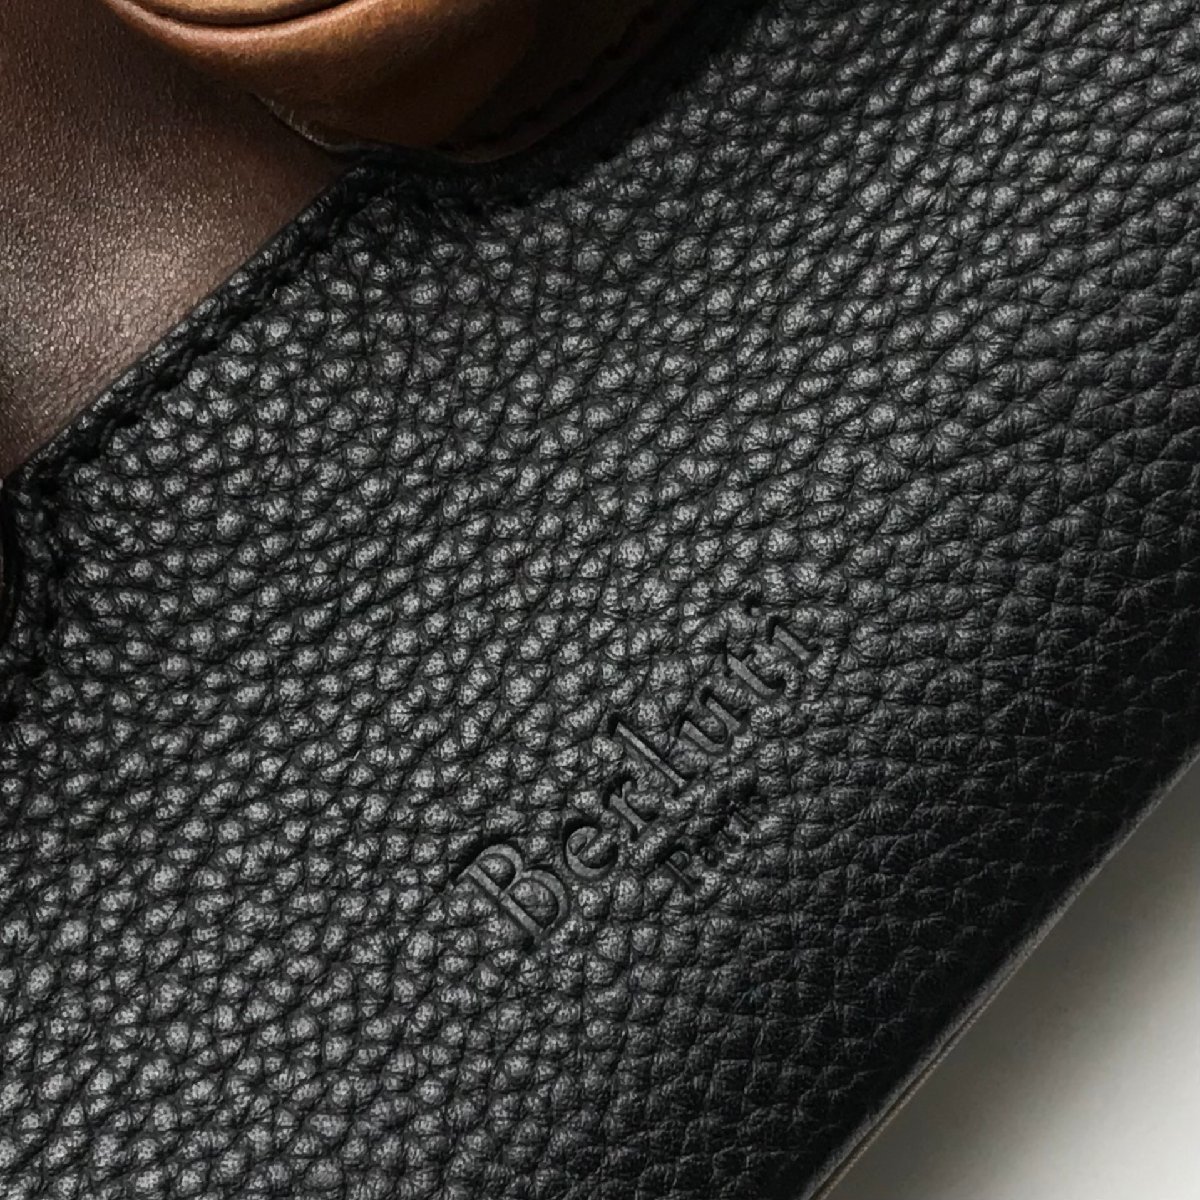 Berluti Berluti Horizon leather rucksack backpack Brown x black beautiful goods A455